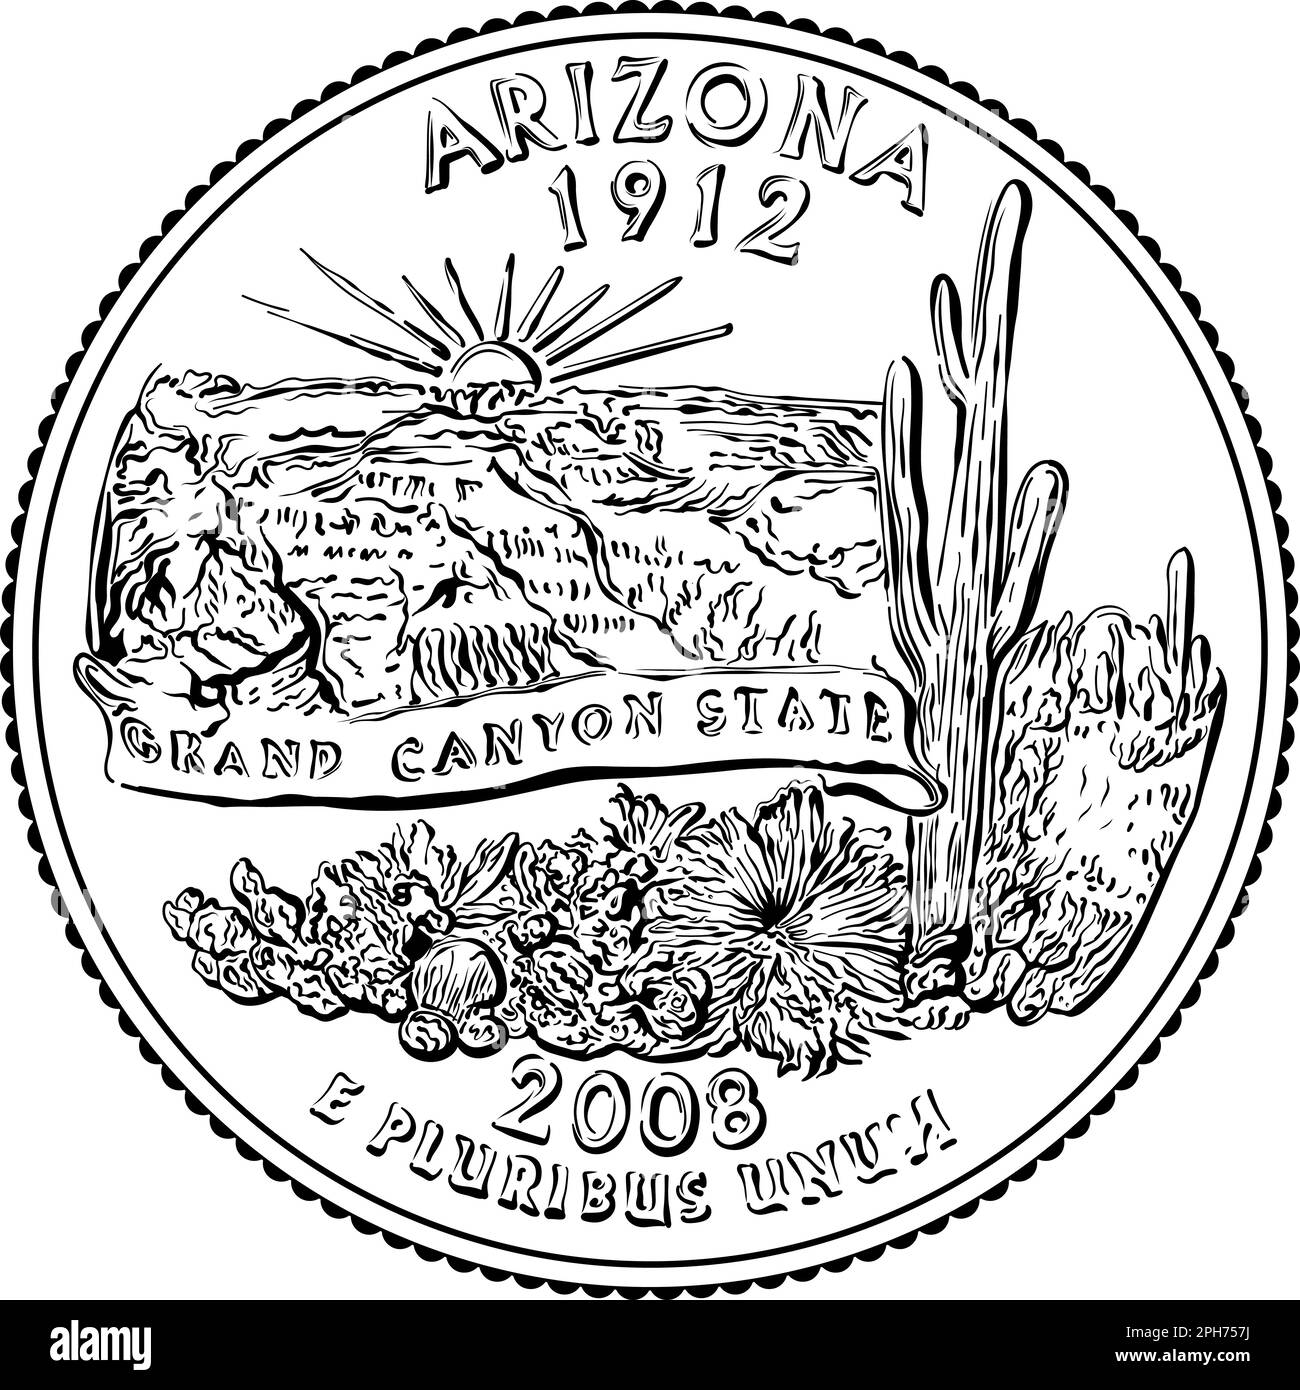 Amerikanisches Geld, USA Washington Viertel Dollar Arizona oder 25 Cent Silbermünze, Grand Canyon auf der Rückseite. Schwarzweißbild Stock Vektor